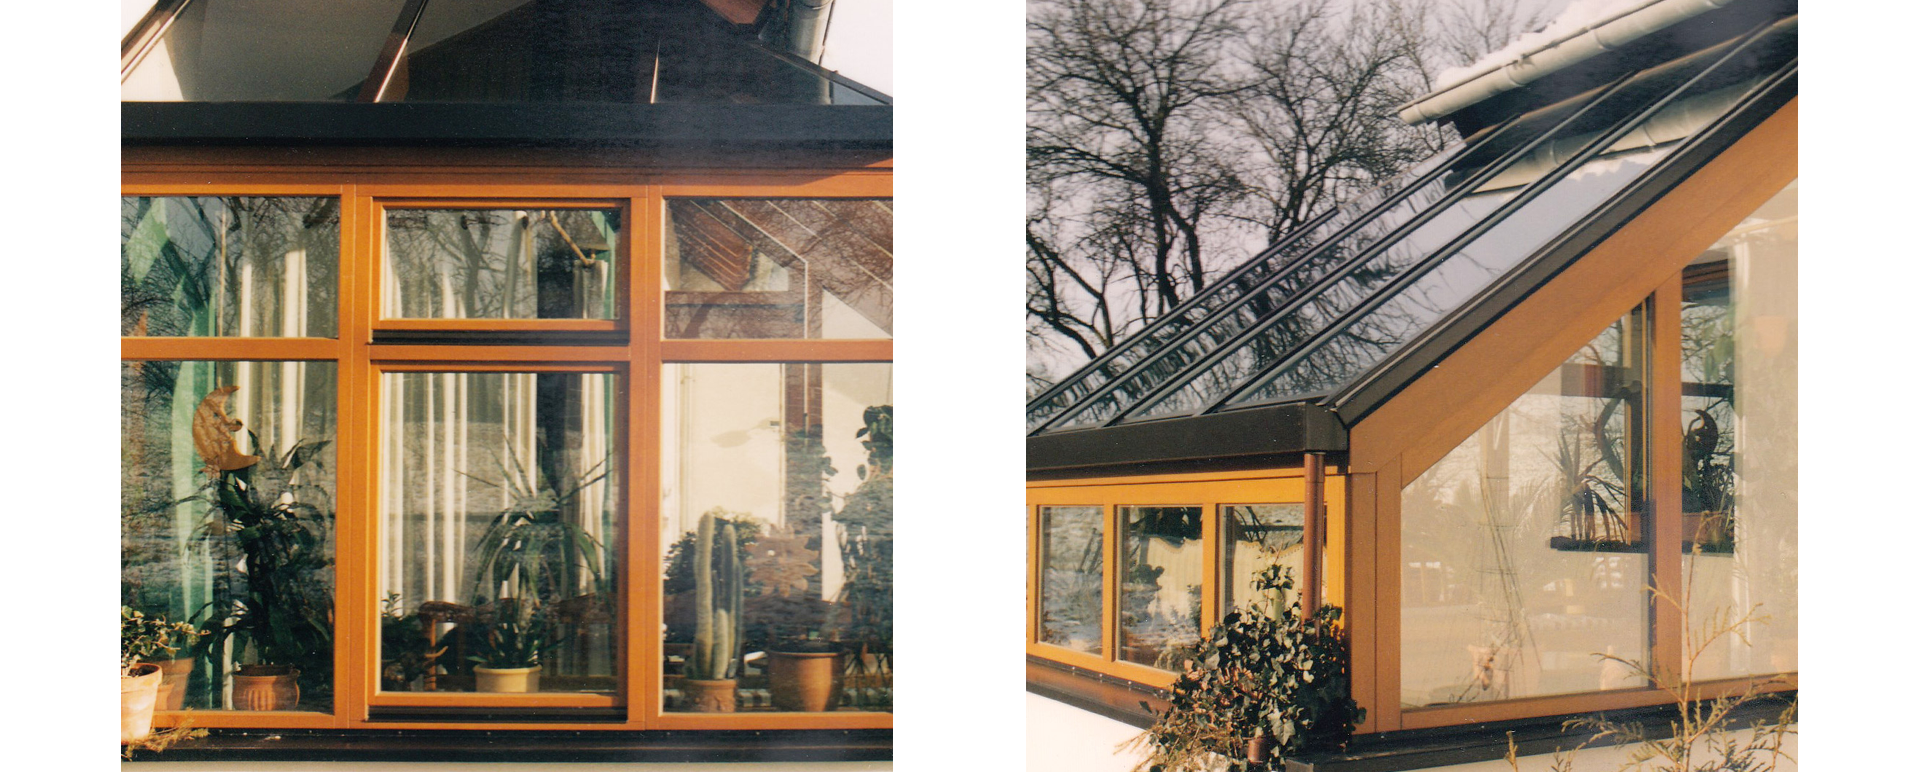 Zwei Bilder von demselben Haus mit Wintergarten umrundet mit Fenstern, Ansicht von außen